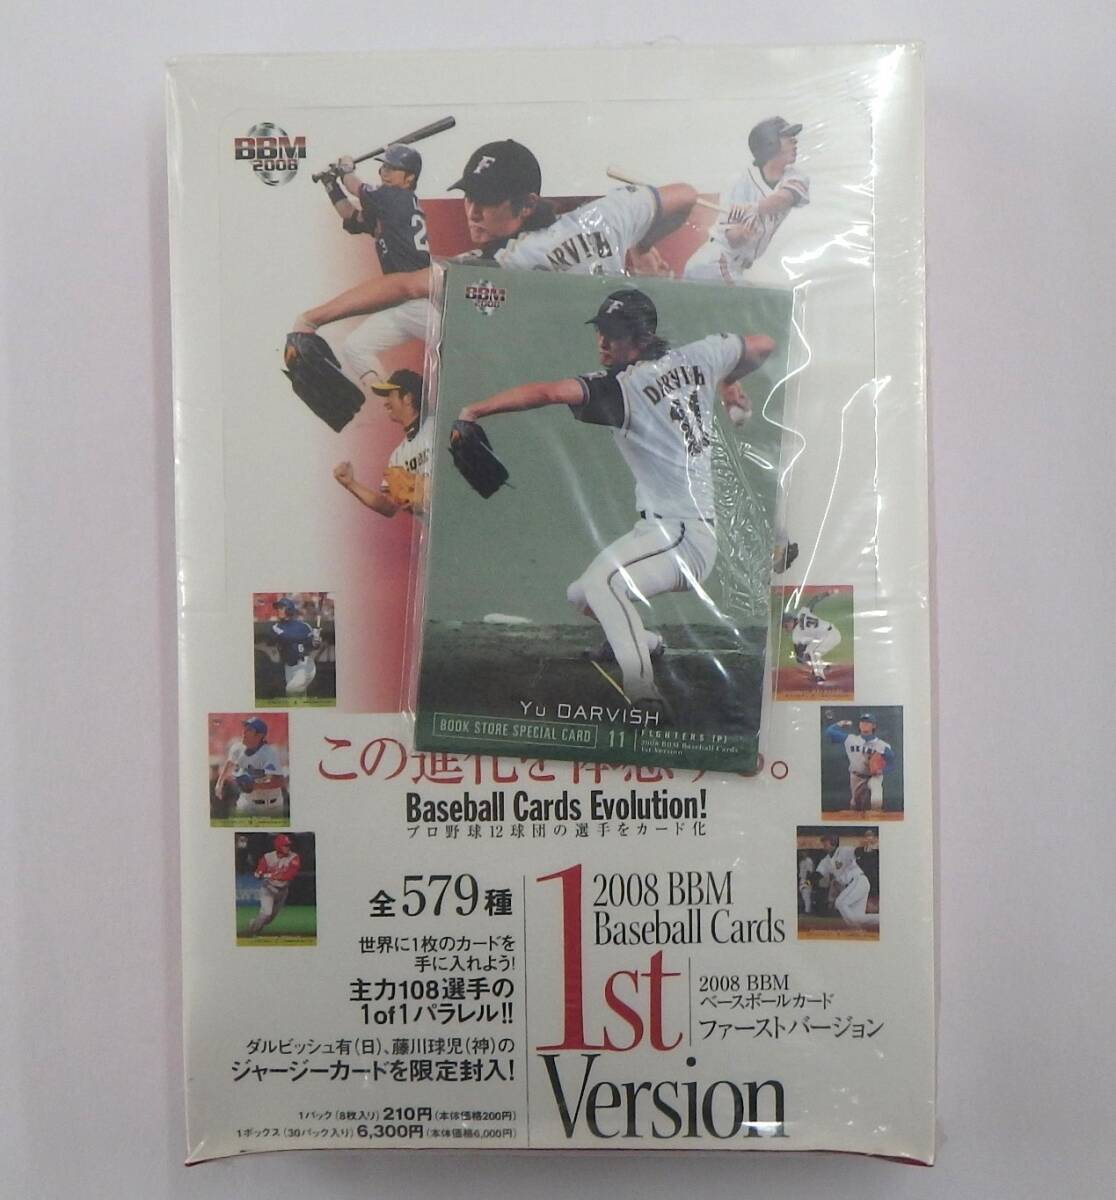 【未開封ボックス】2008 BBM Baseball Cards 1st Version ベースボールカード BOOK STORE SPECIAL CARD付 ダルビッシュ有_画像1